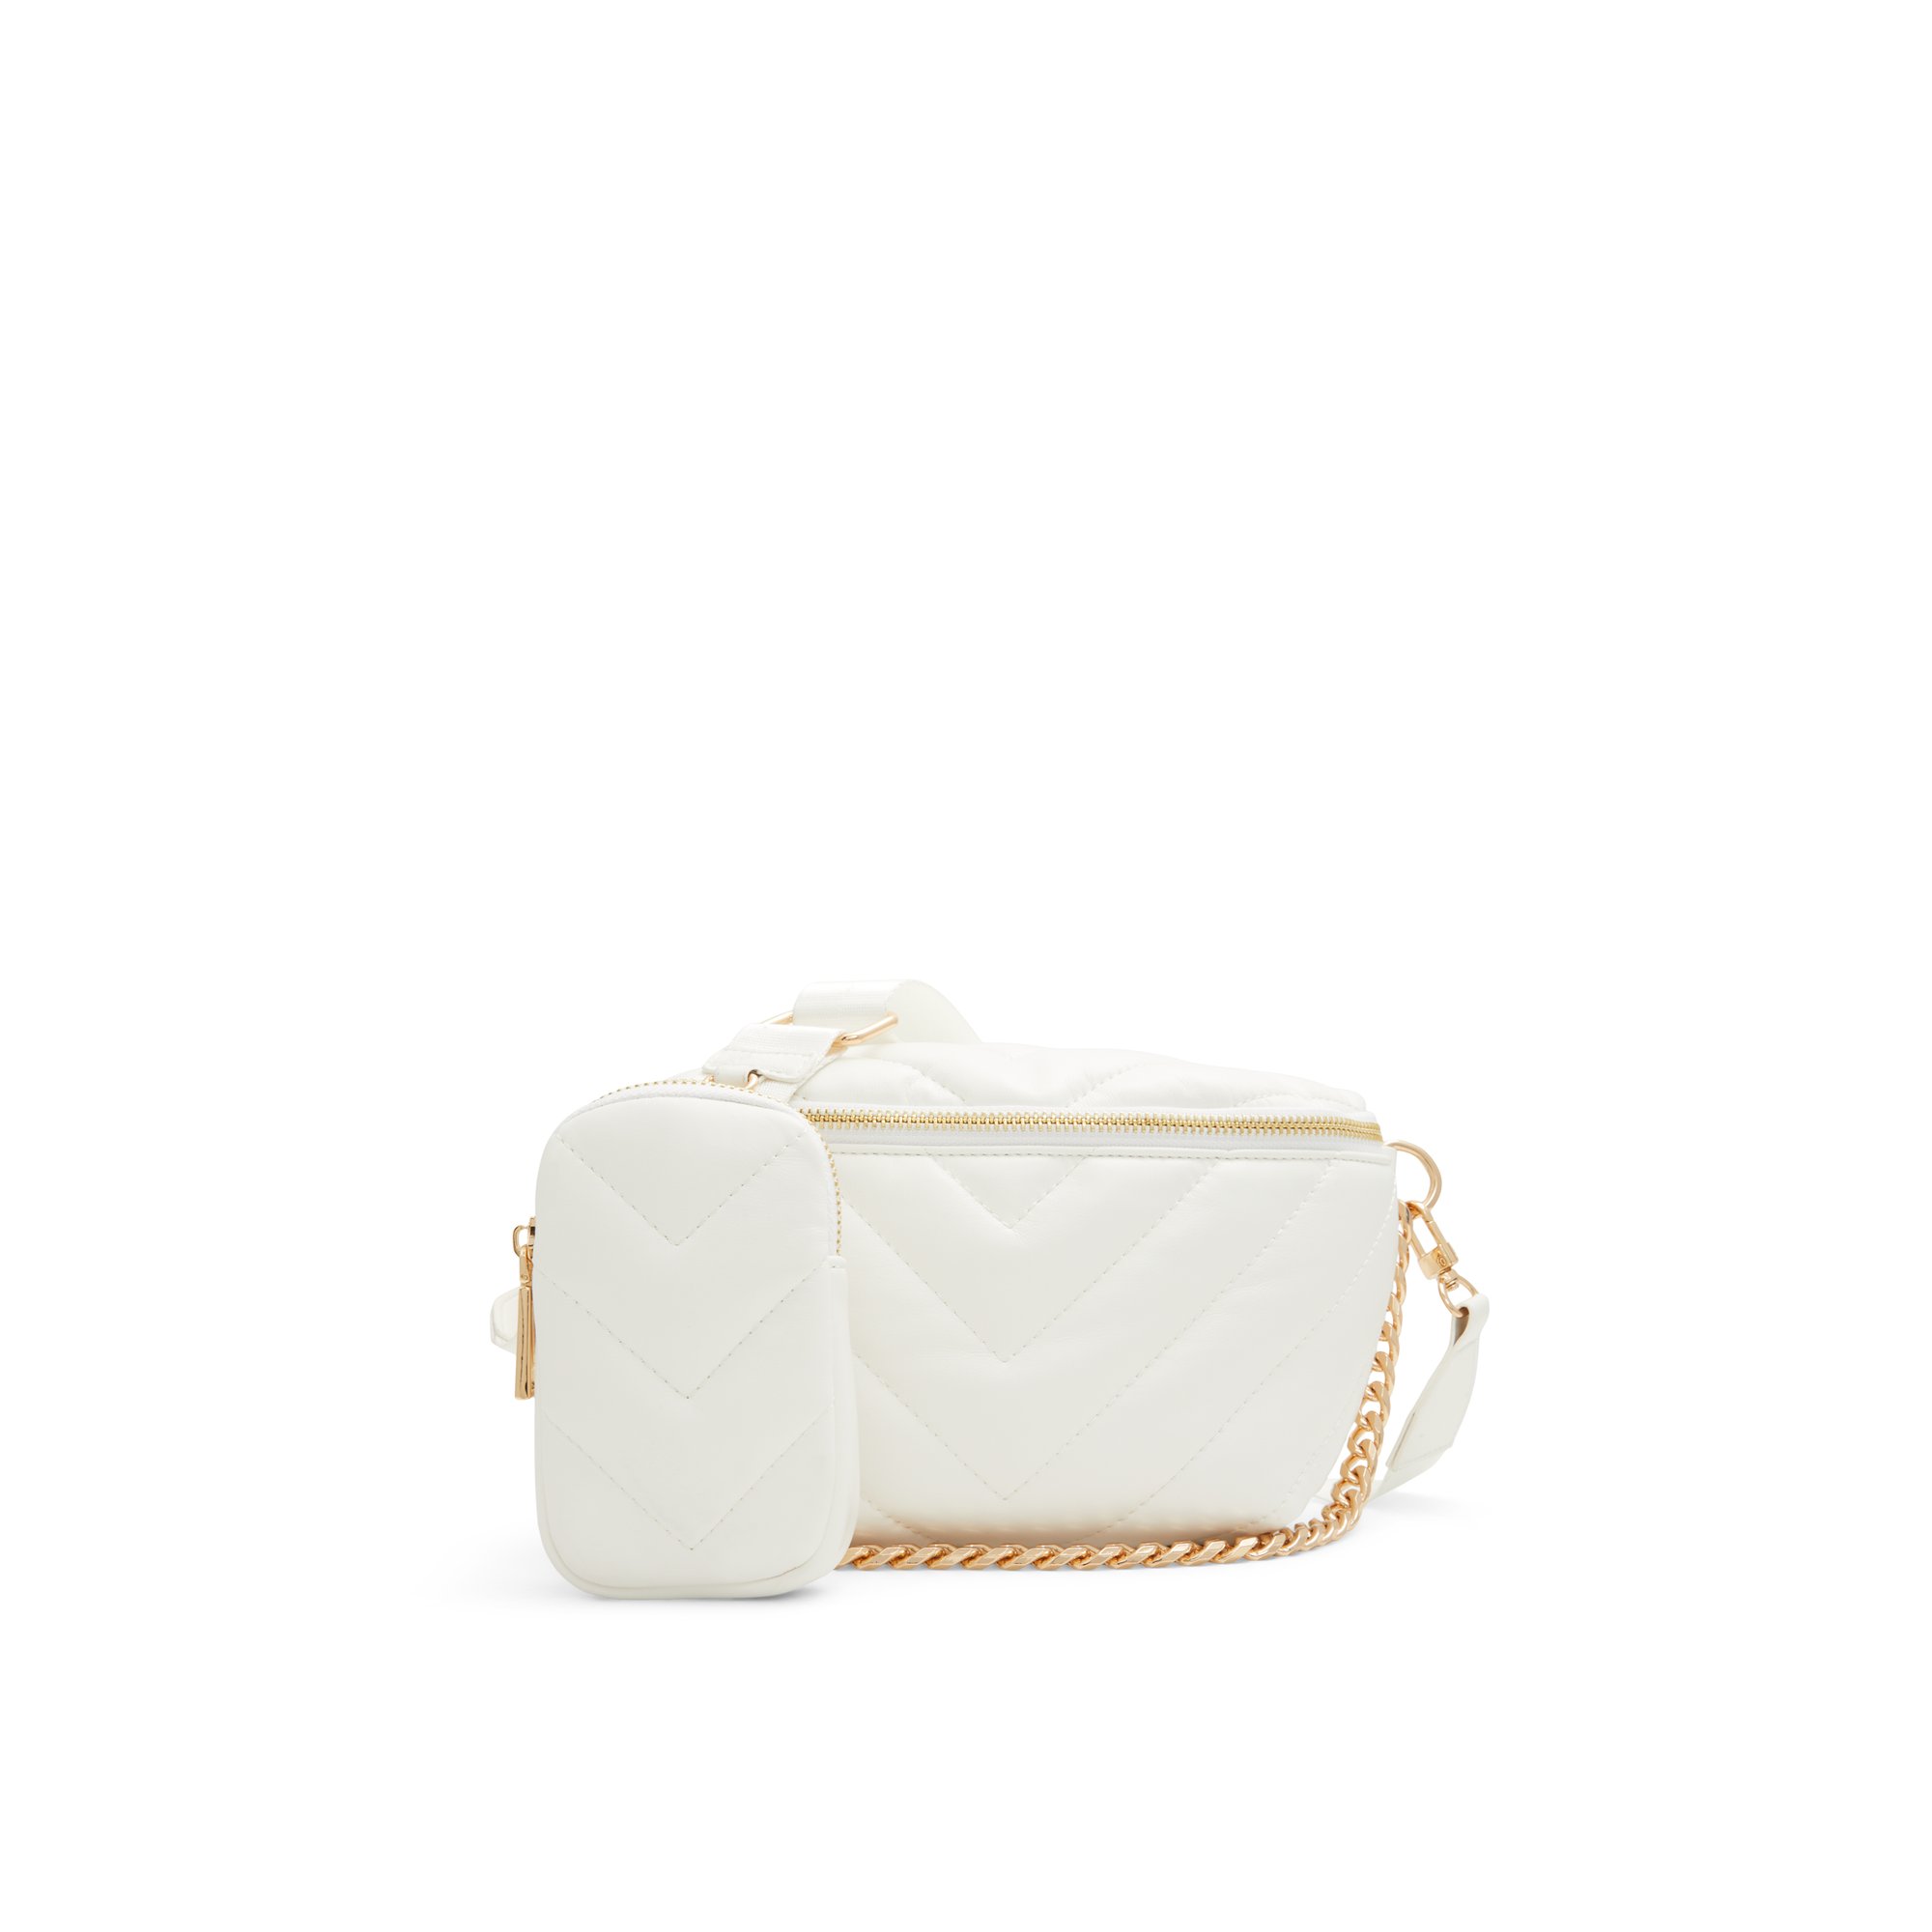 ALDO Puffcarrypak - Women's Backpack Handbag - White